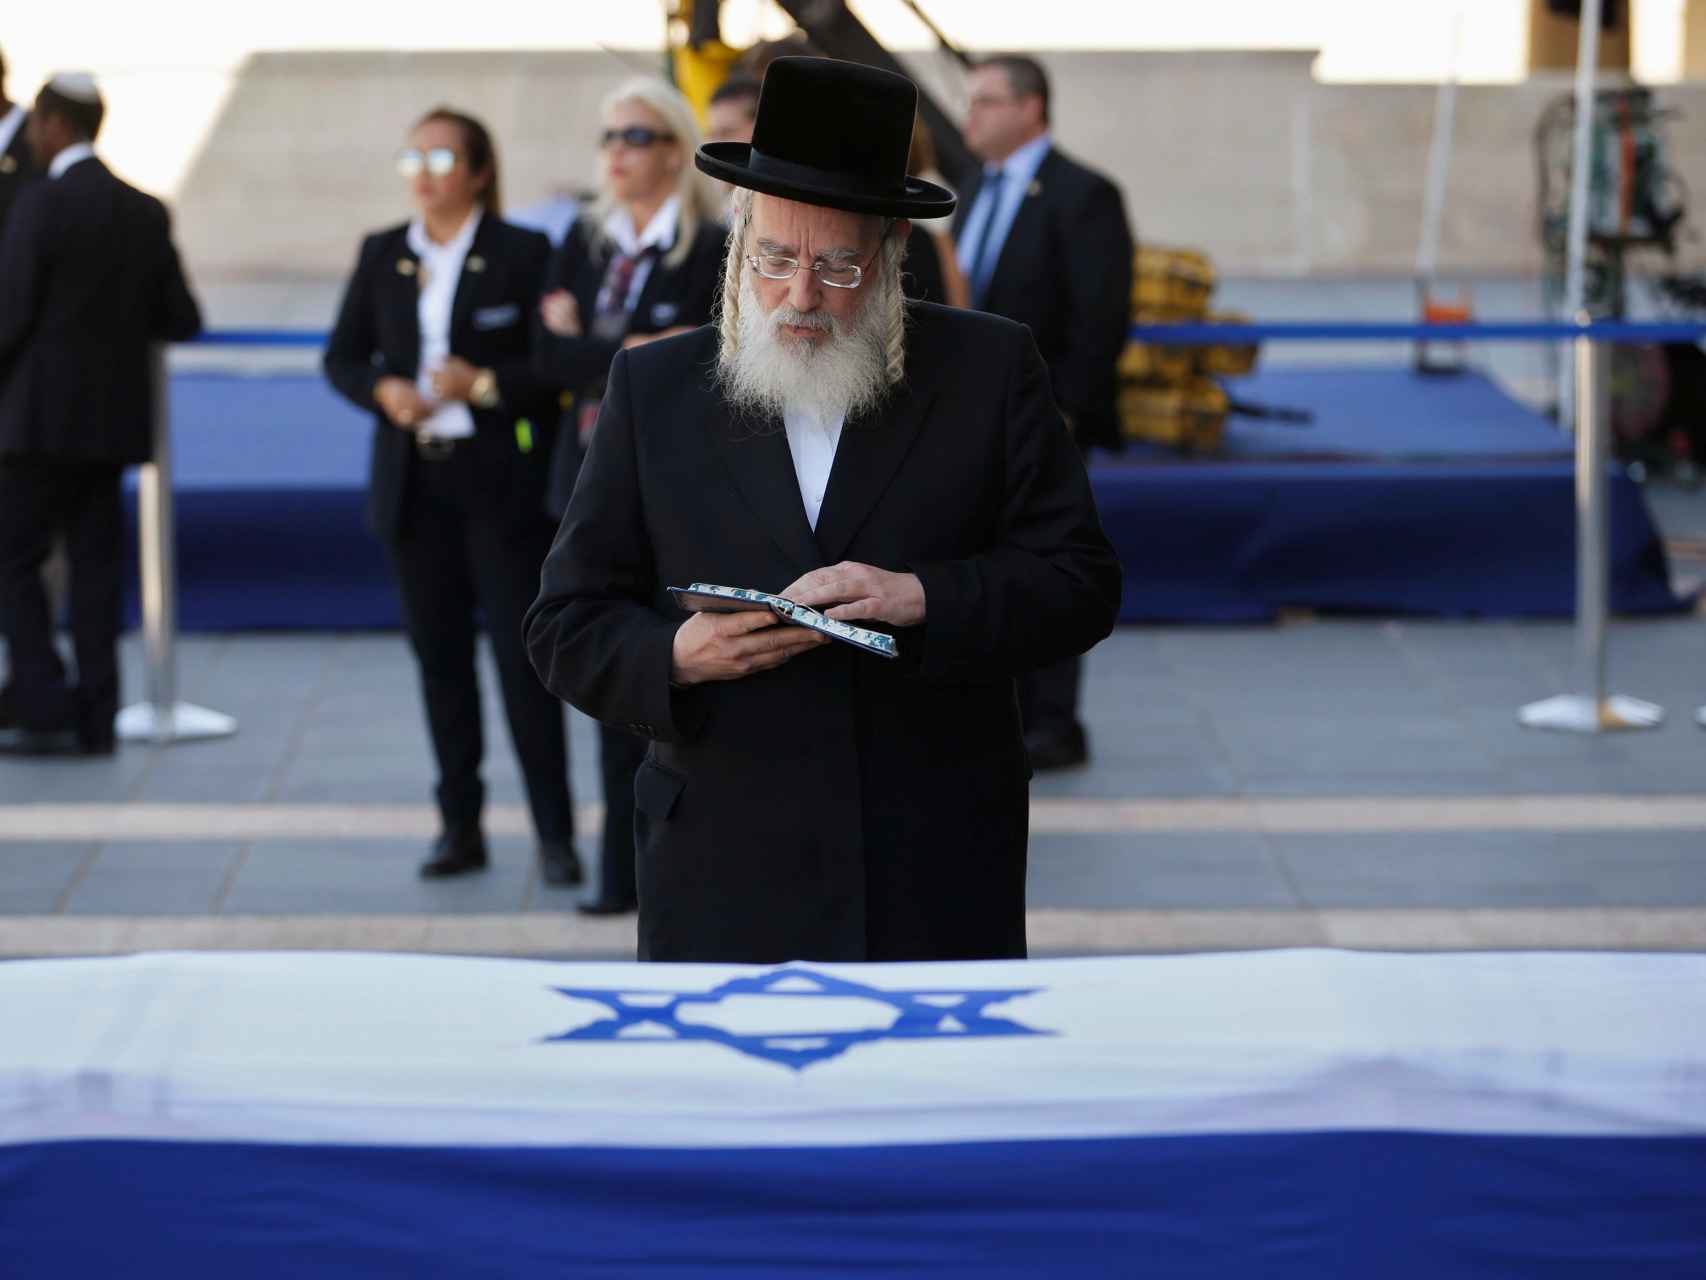 El cuerpo de Peres se halla junto al Parlamento.